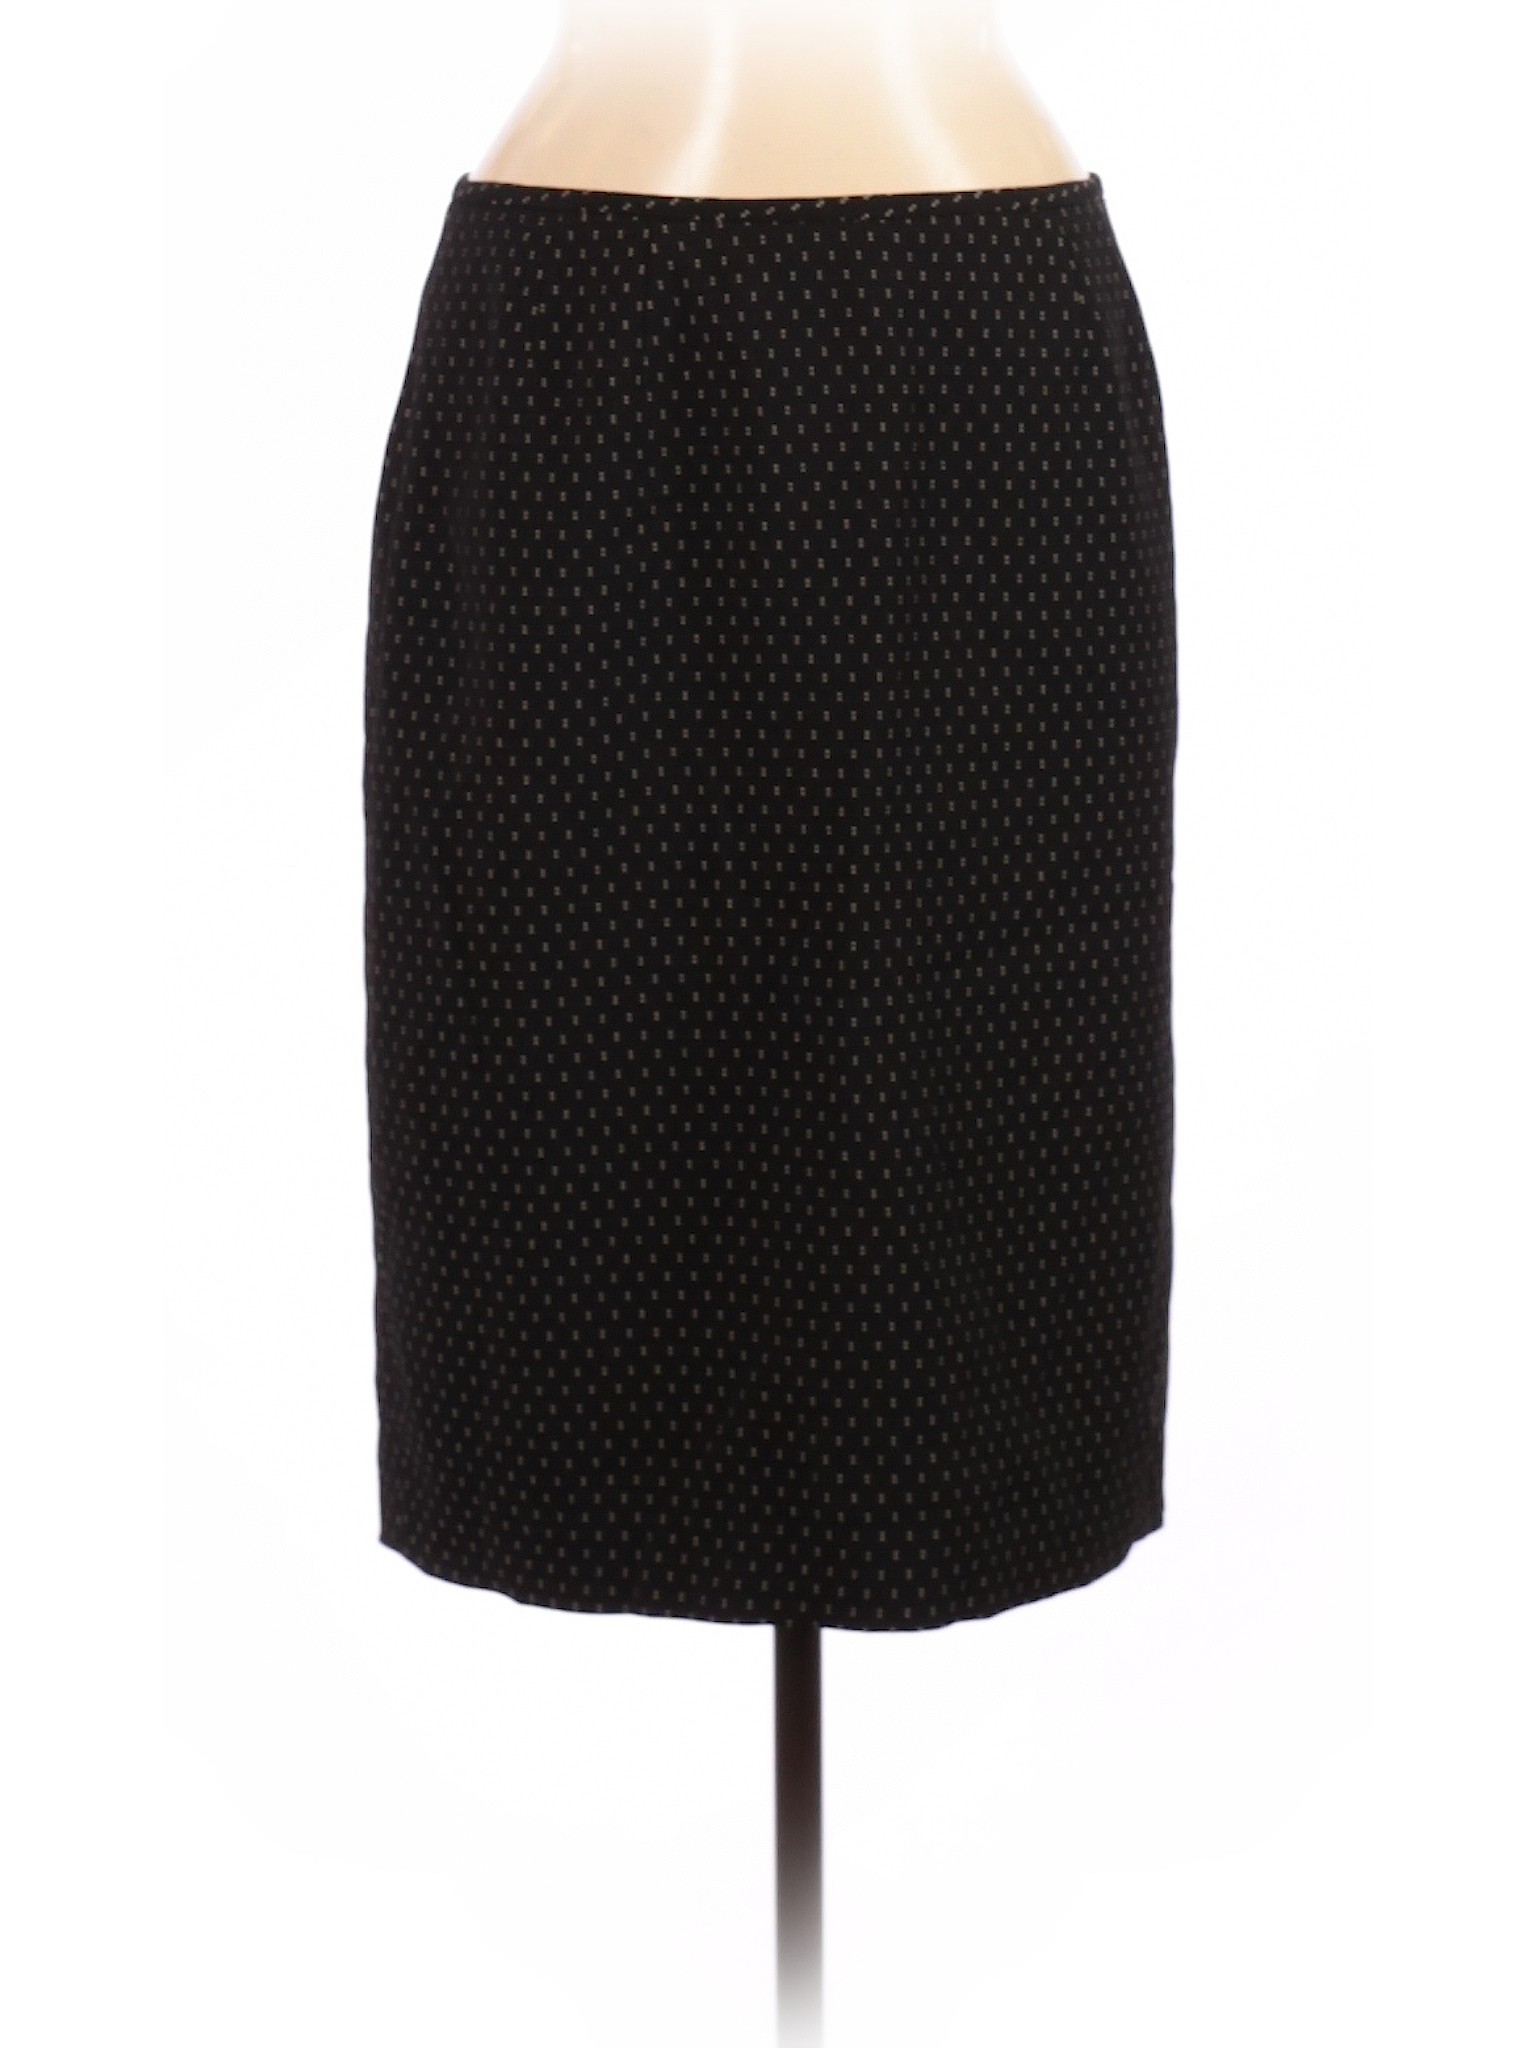 Le Suit Women Black Casual Skirt 10 Petites | eBay